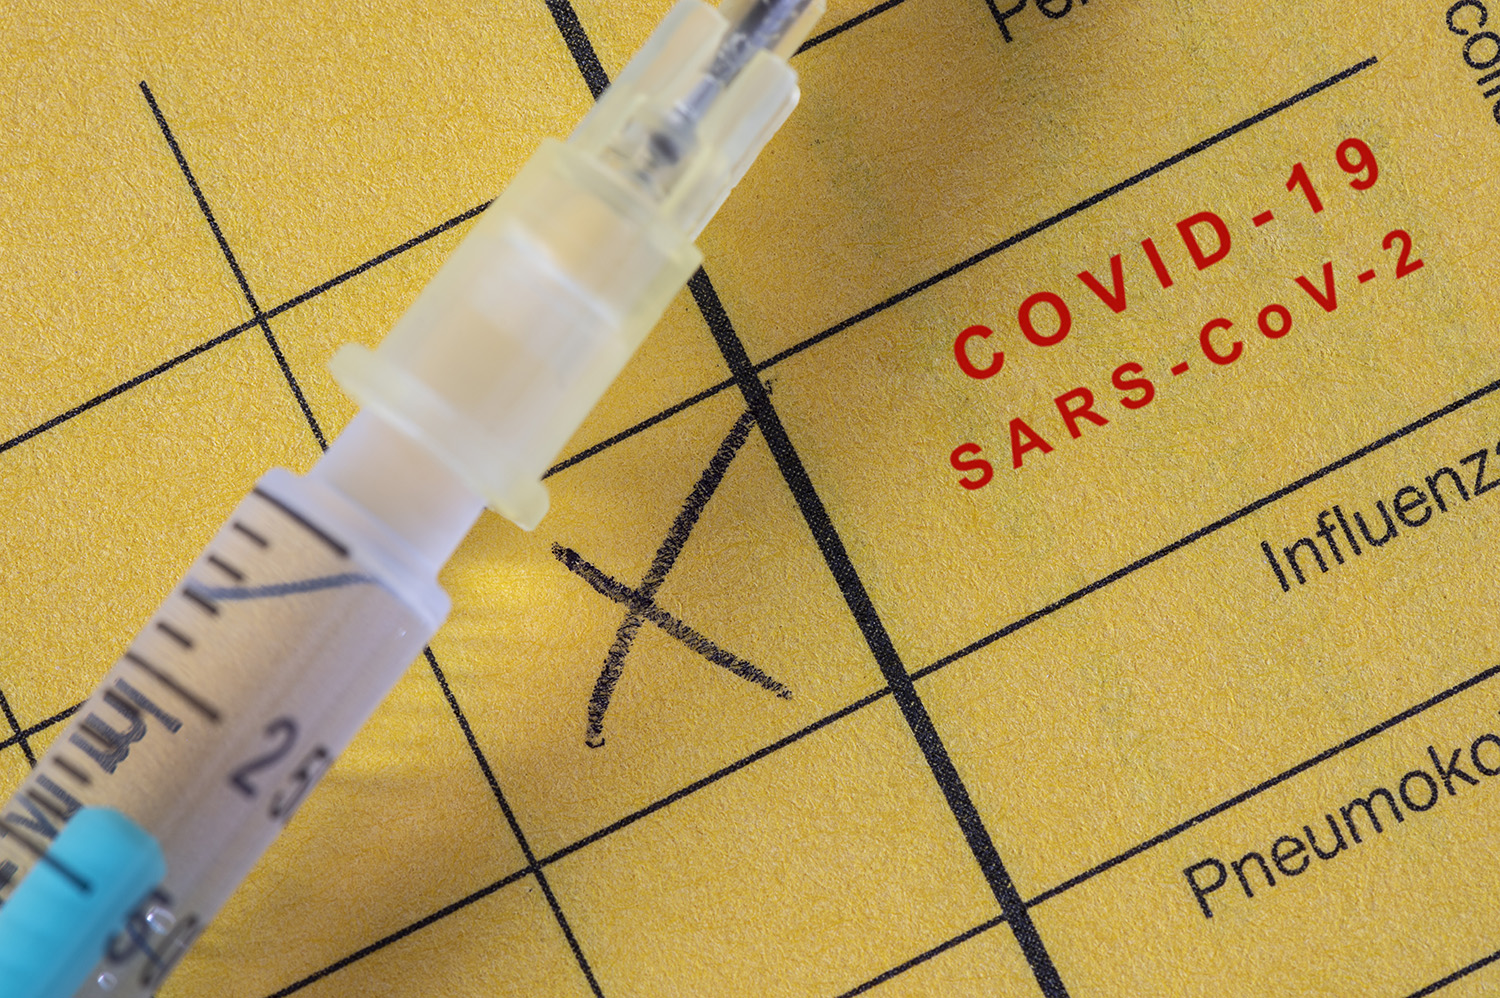 Noch zwei Monate haben Praxen Zeit, sich auf die Corona-Impfpflicht vorzubereiten. Der Deutsche Hausärzteverband hat für Praxisteams zusammengefasst, was bei der Umsetzung und Dokumentation zu beachten ist.